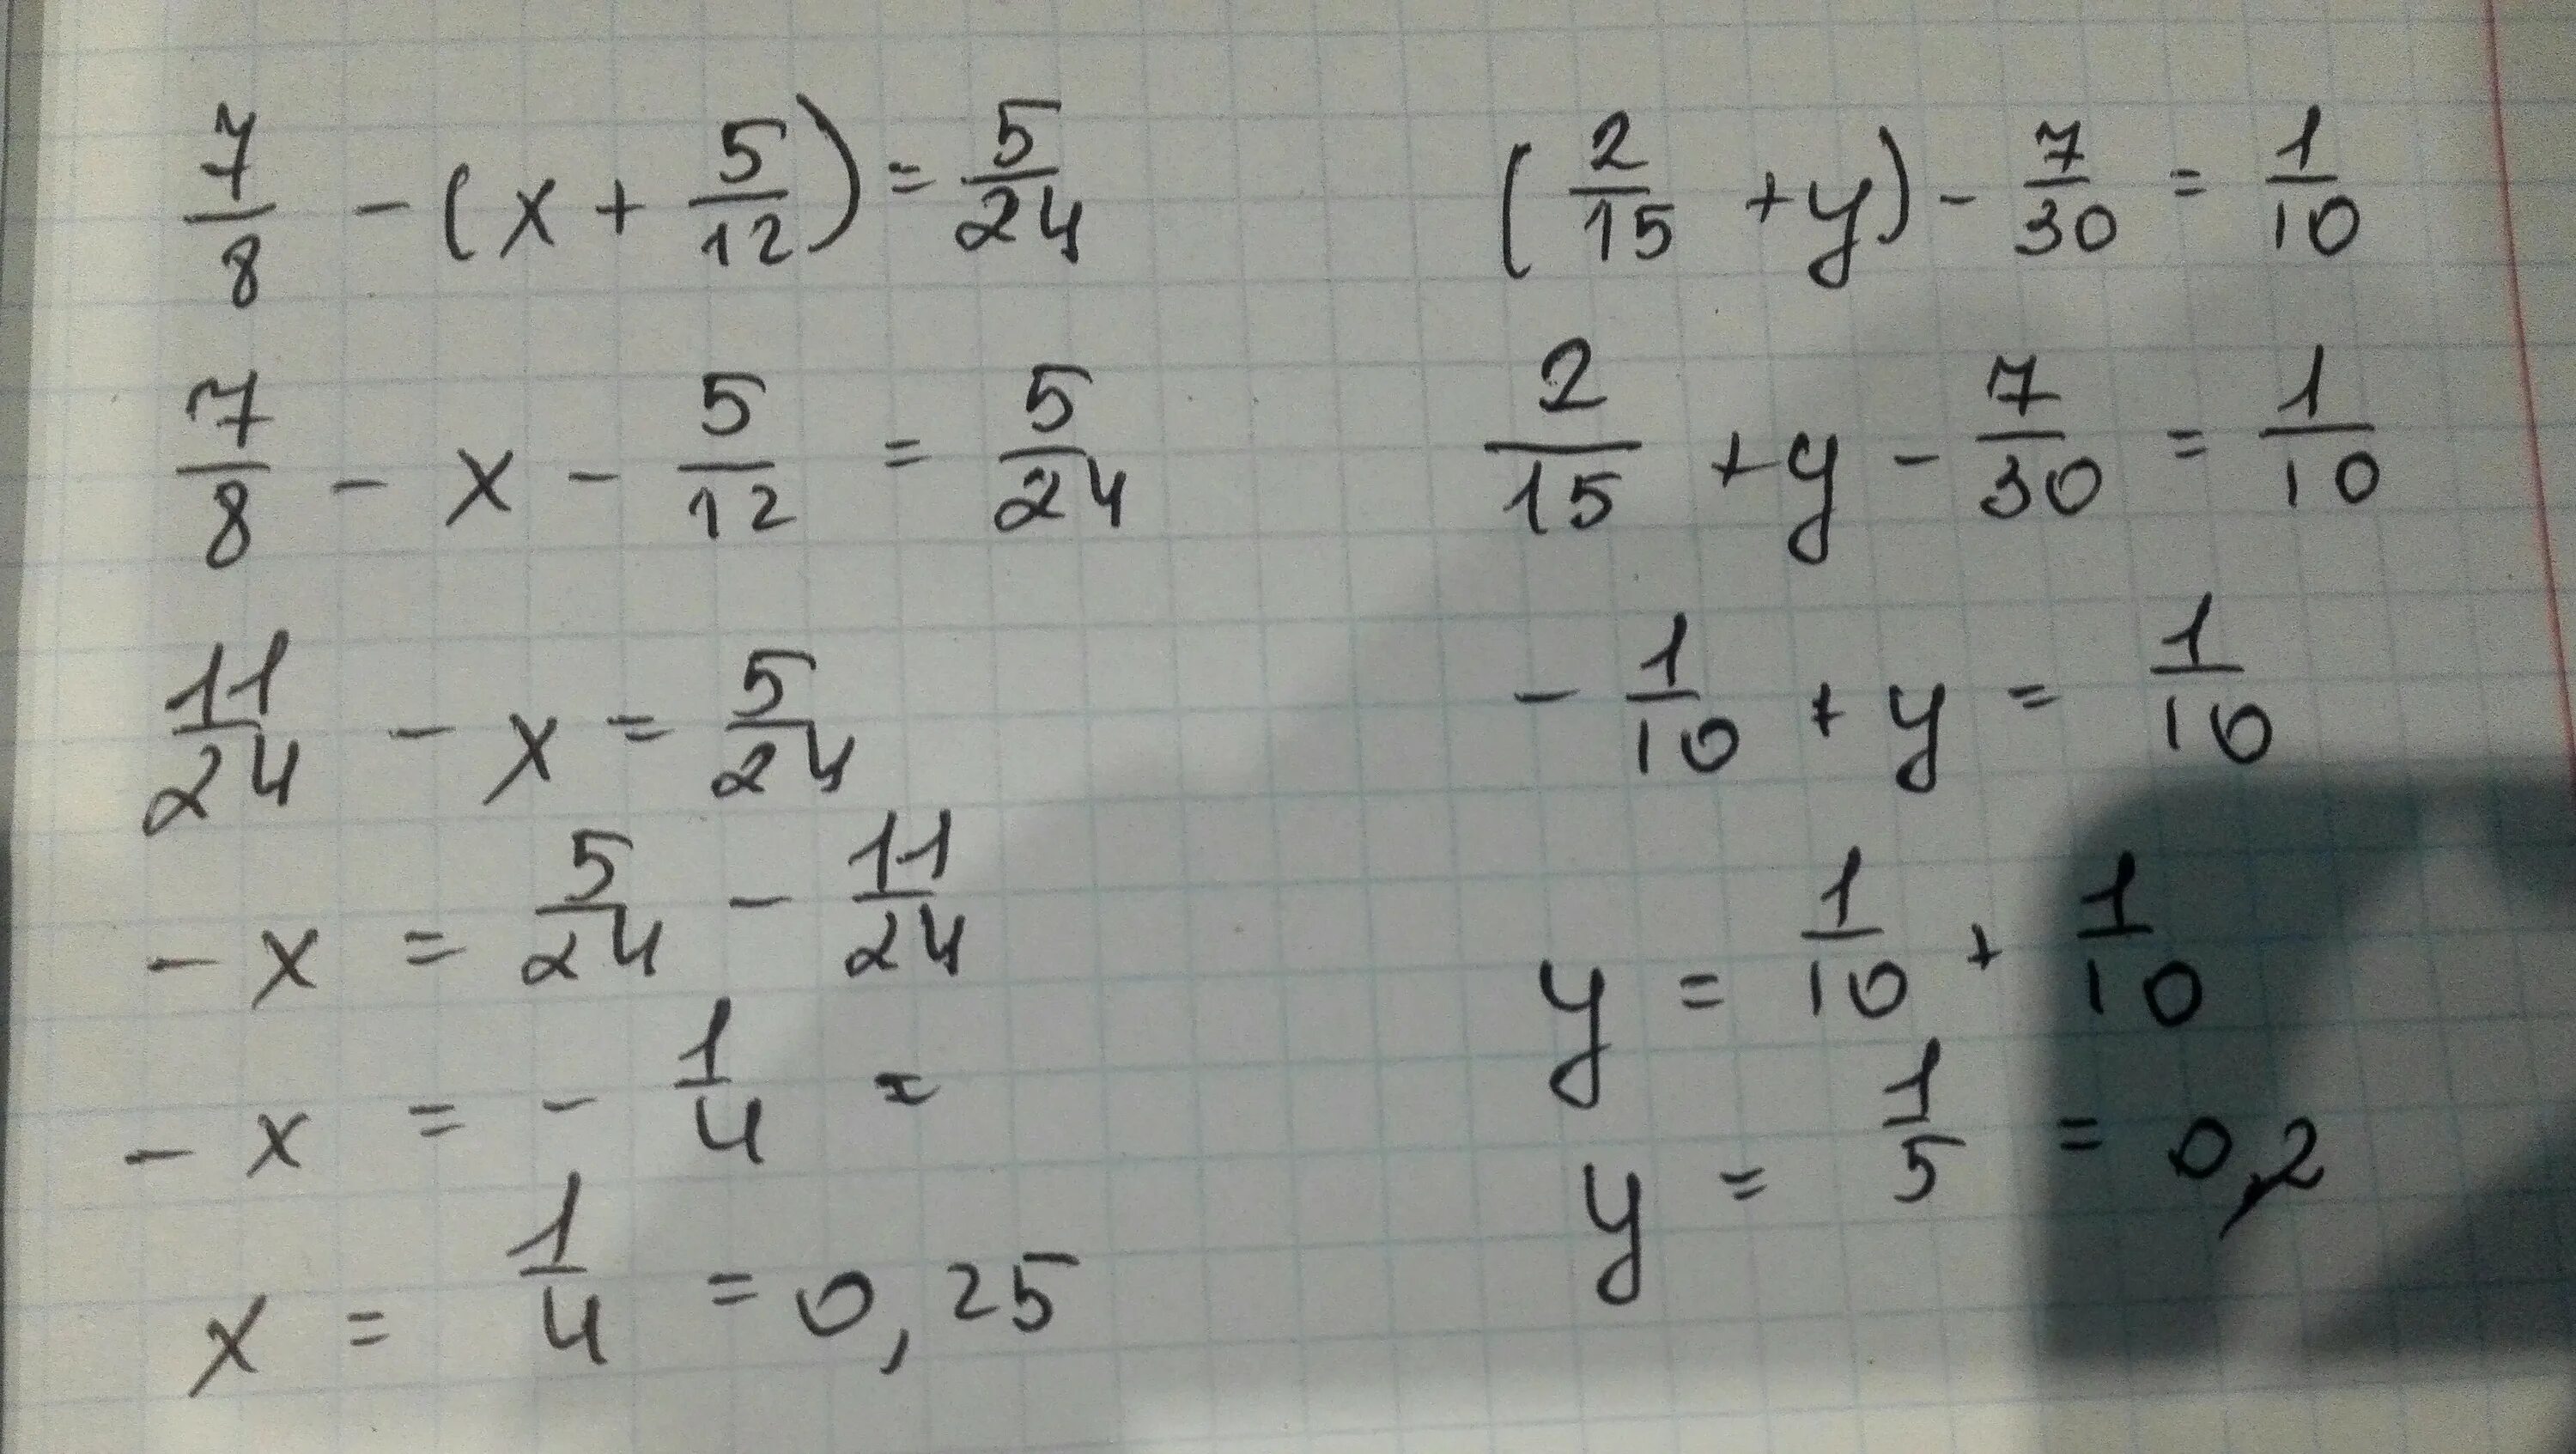 1 1 10 1 15 решение. ( 2/15+1 7/12) ×30/103-2 2 1/4 ×9/32+2 1/3 решение. (2/15+1 7/12)*30/103-2:2 1/4*9/32+2 1/3. ( 15 2 + 1 12 7 ) ⋅ 103 30 − 2 : 2 4 1 ⋅ 32 9 + 2 4 3. 10) -30-(12-2x)=8-2x.